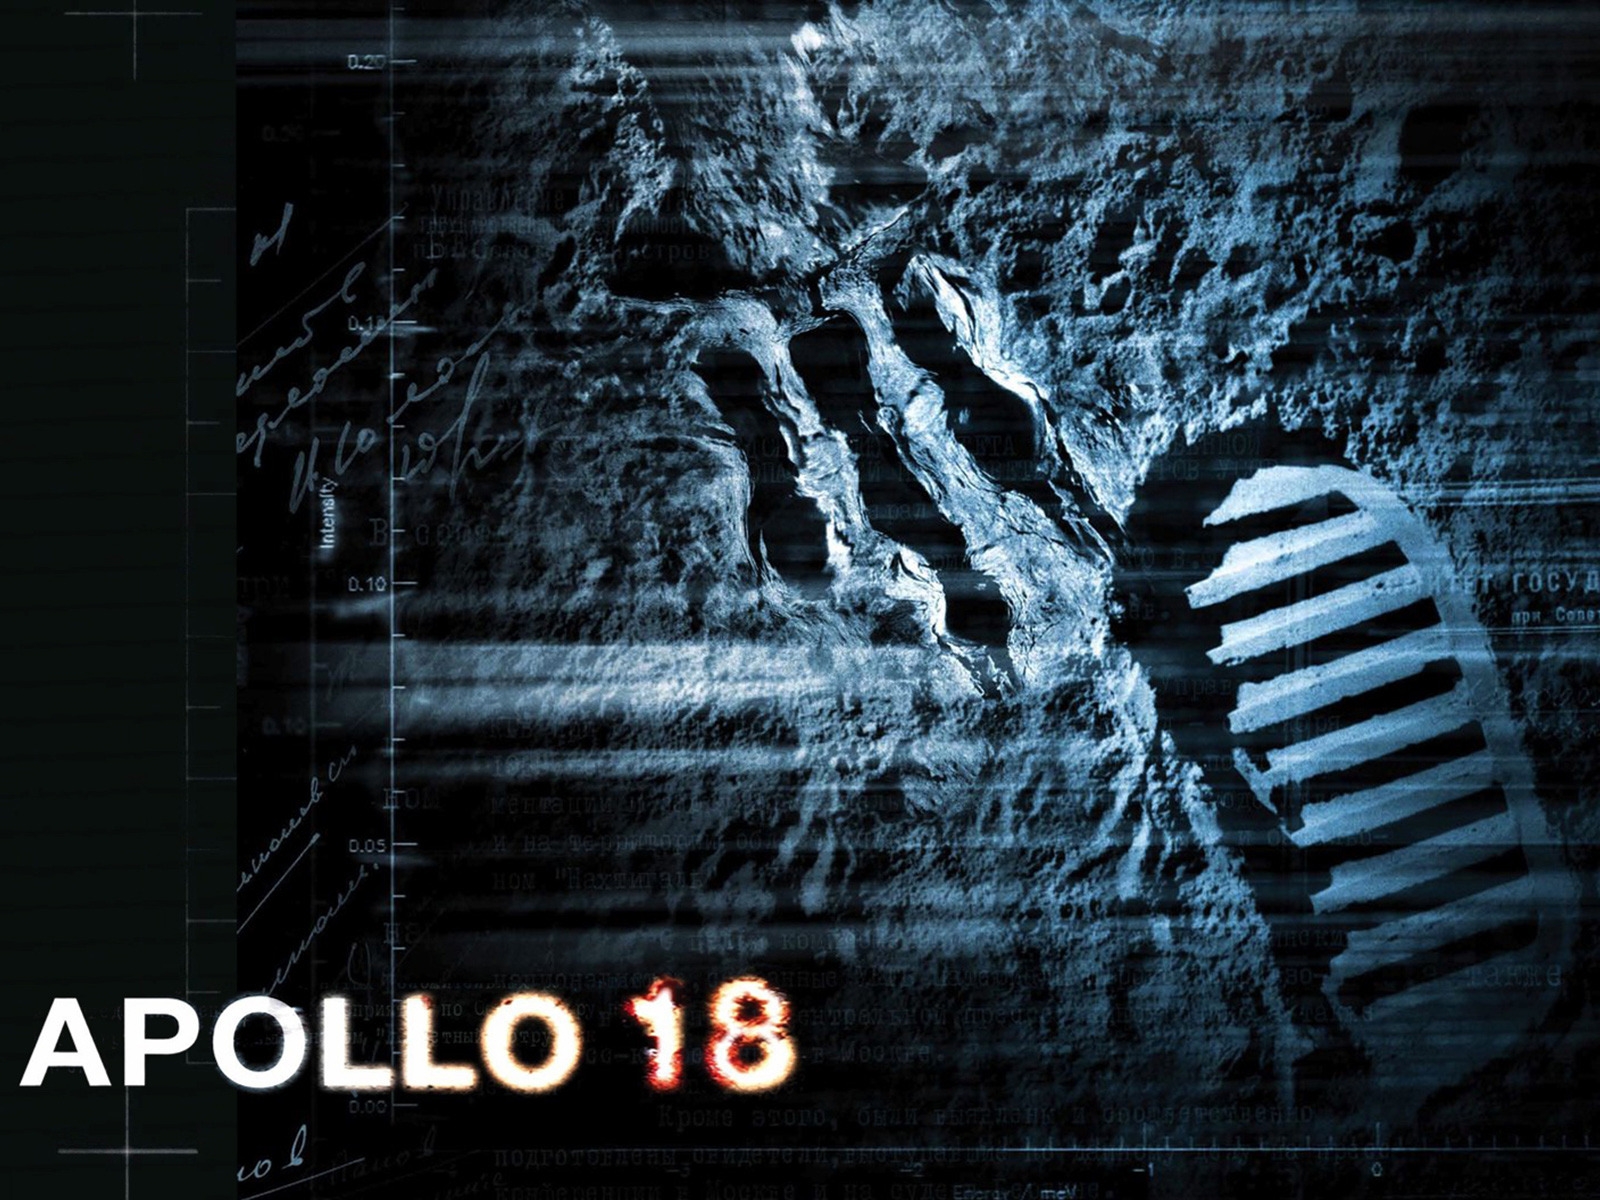 Apollo 18 Movie for 1600 x 1200 resolution